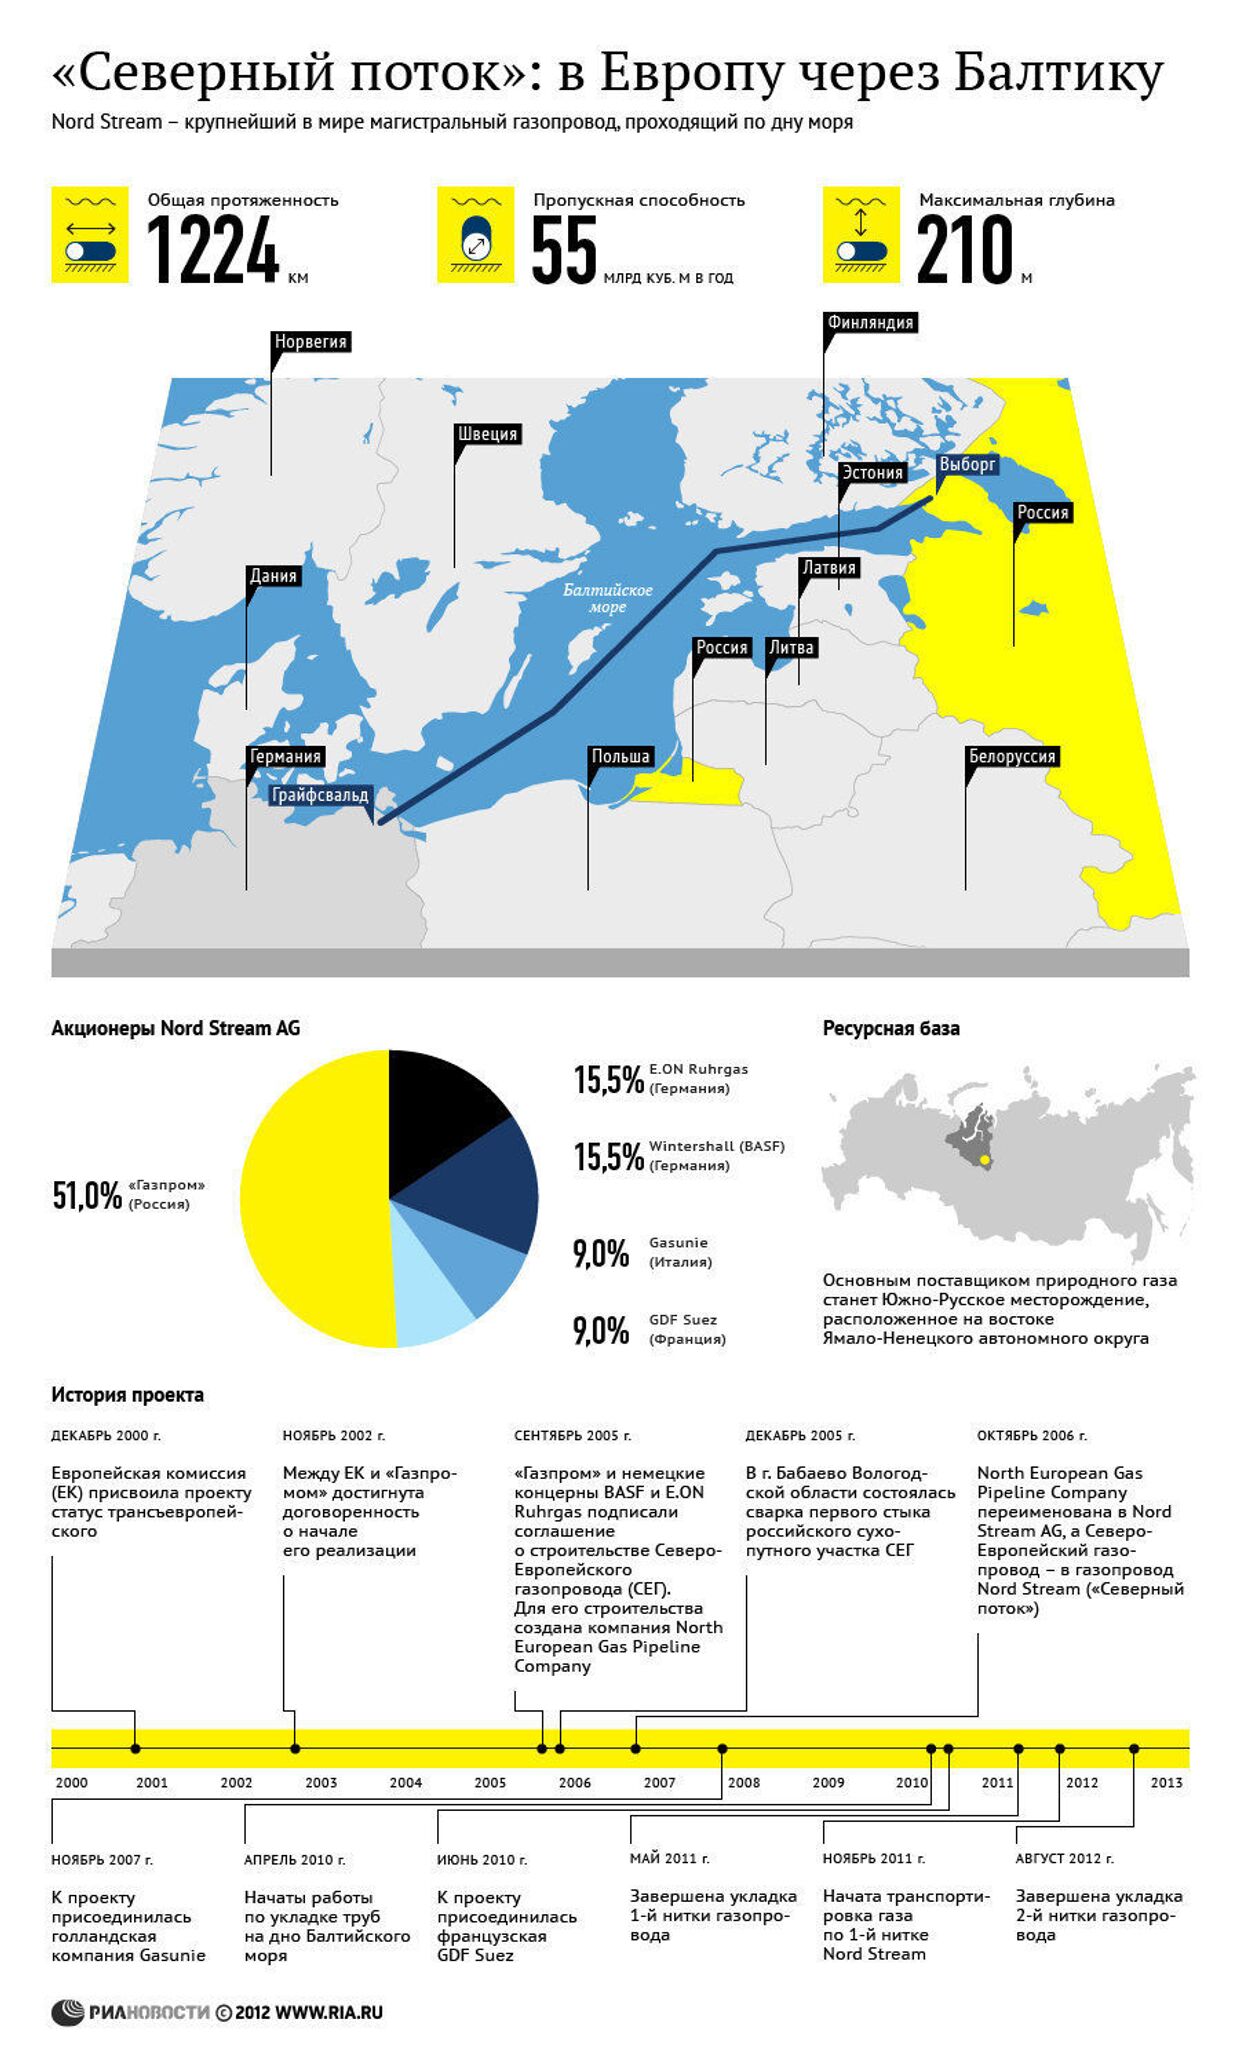 Газопровод «Северный поток»: история, акционеры и ресурсная база  